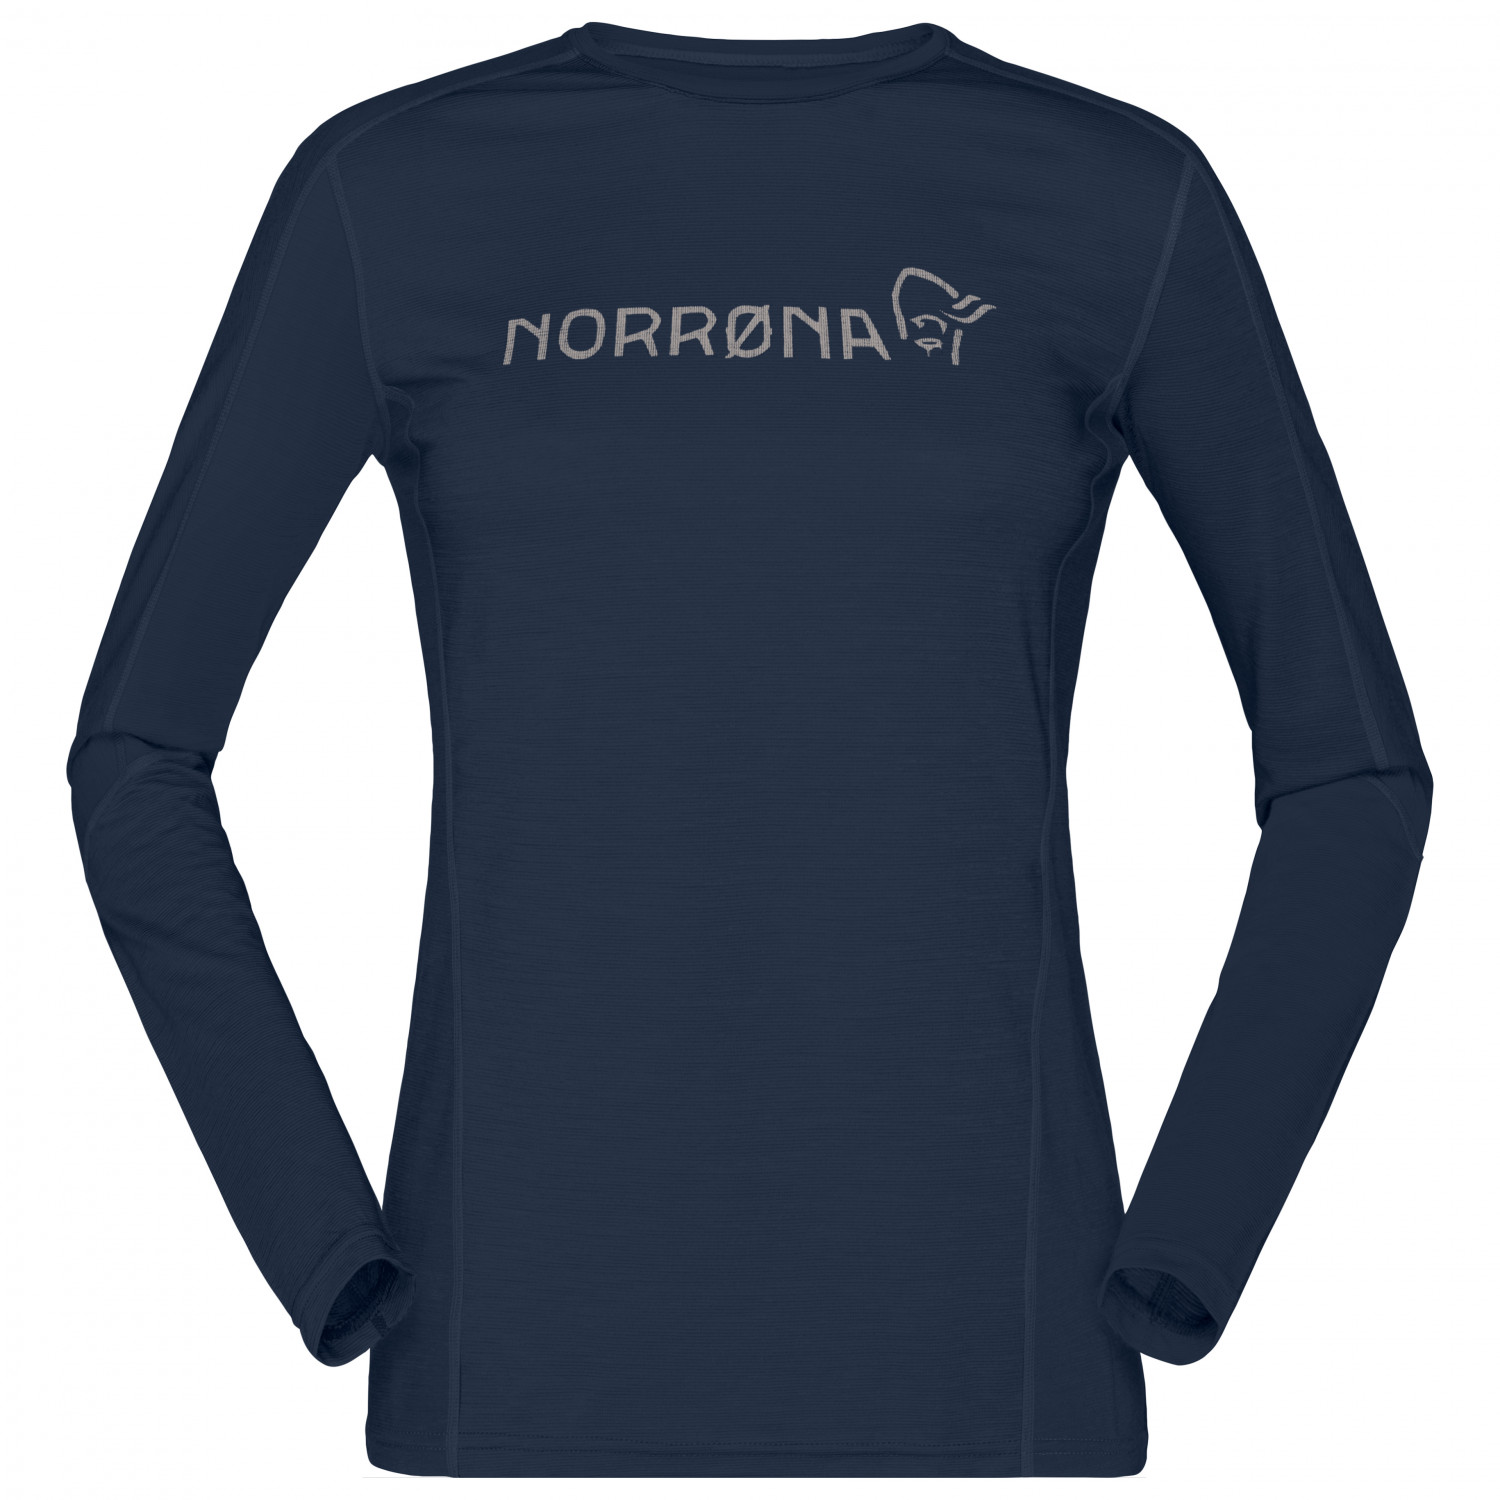 Рубашка из мериноса Norrøna Women's Falketind Equaliser Merino Round Neck, цвет Indigo Night